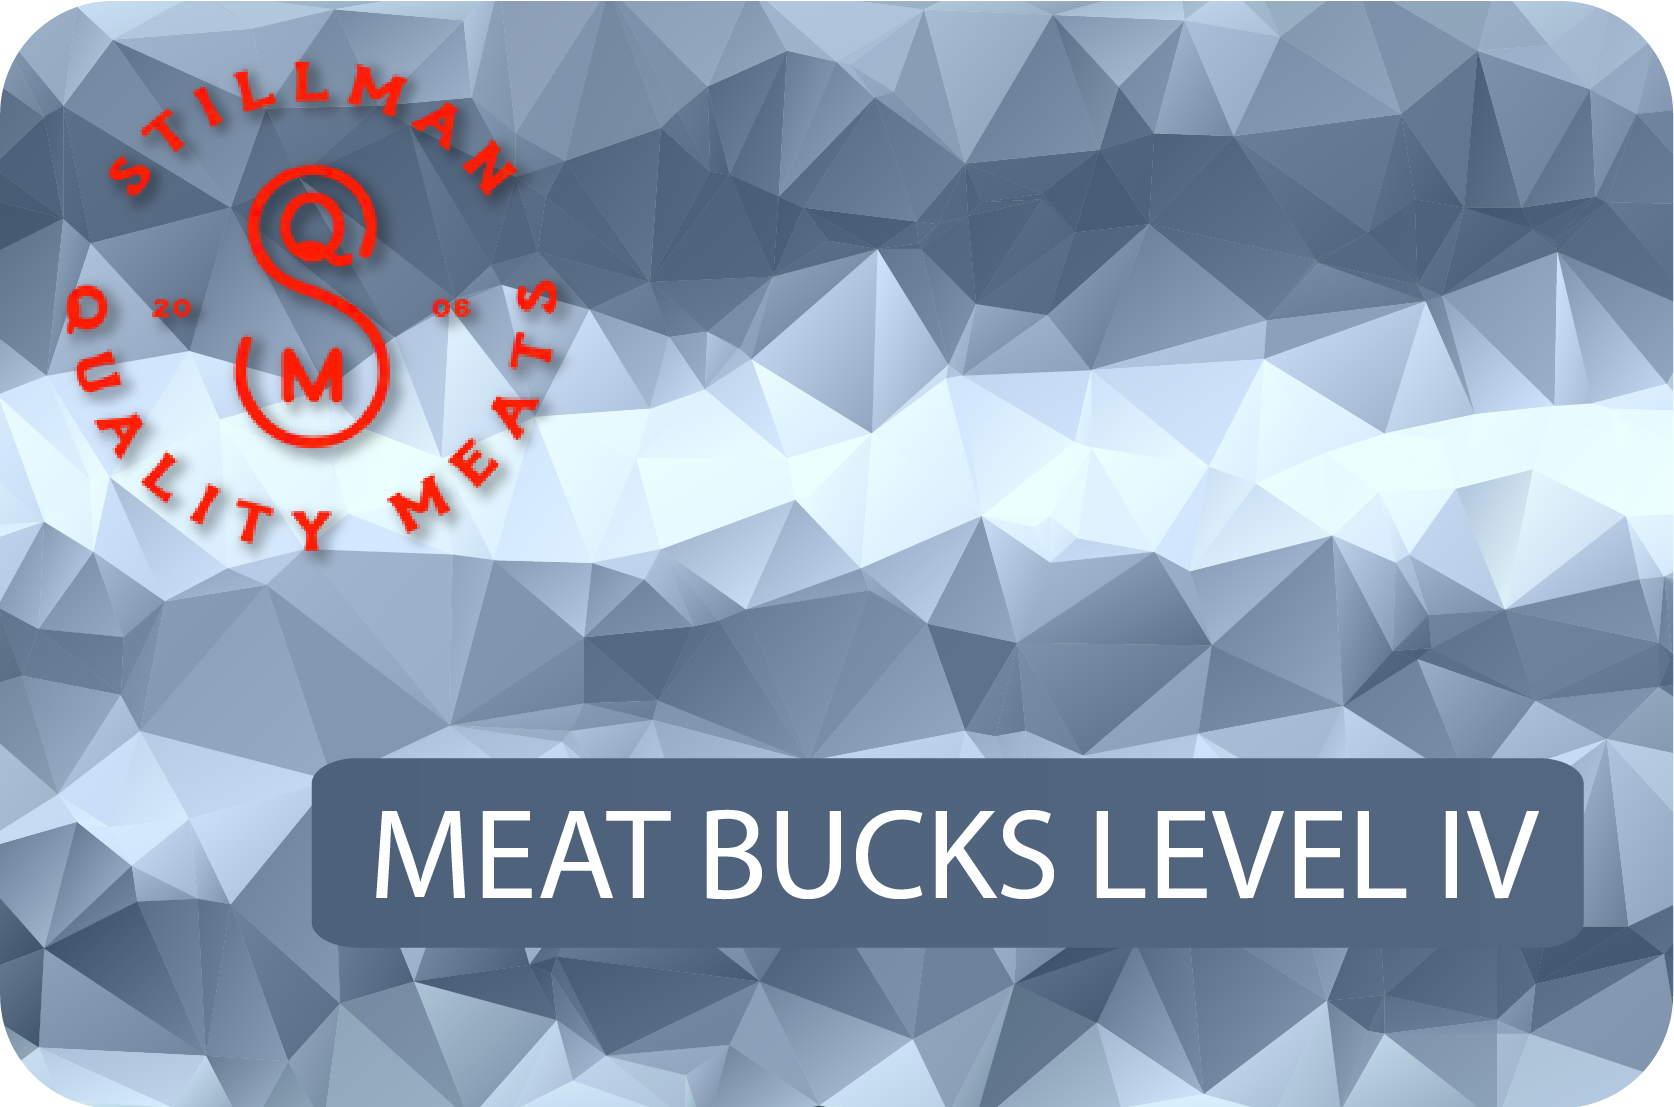 Meat Bucks Level IIII: $2000 → Get $2350 (18% savings!)